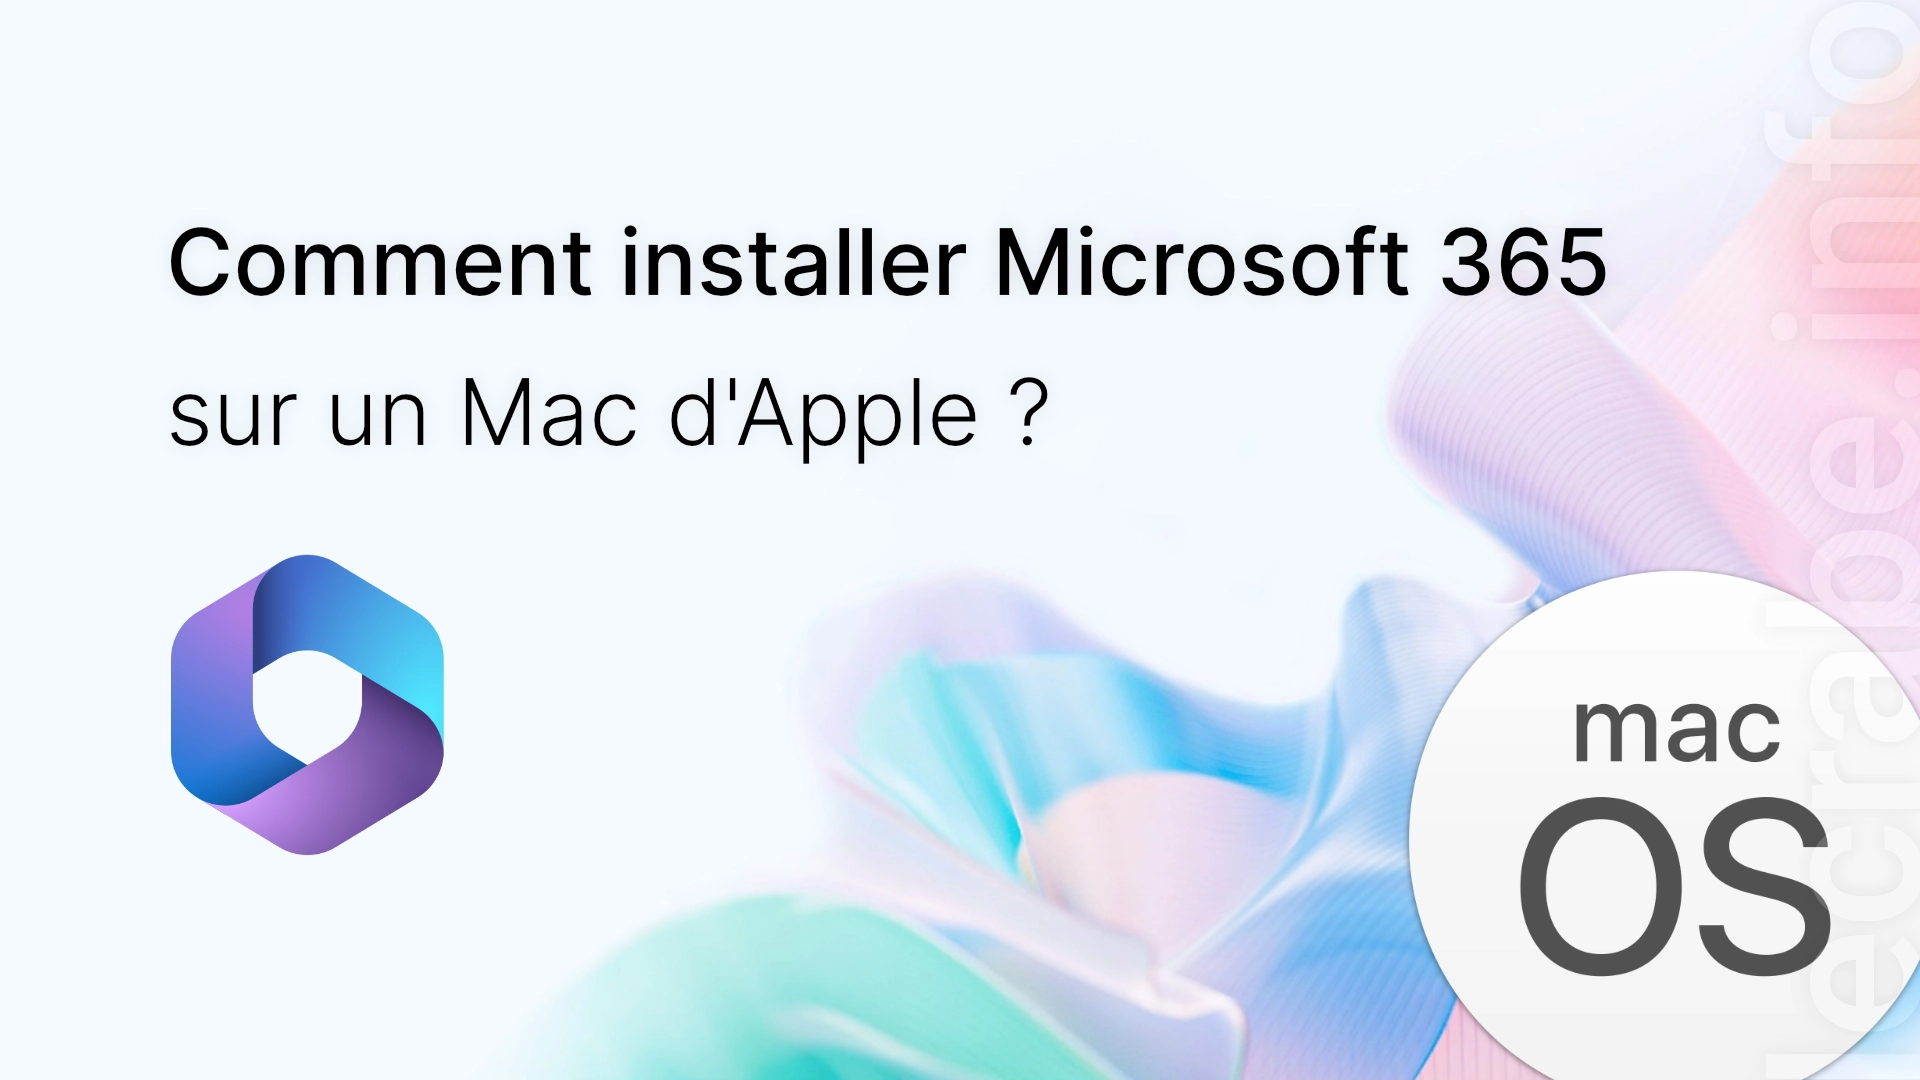 Comment installer Microsoft 365 sur un Mac ?